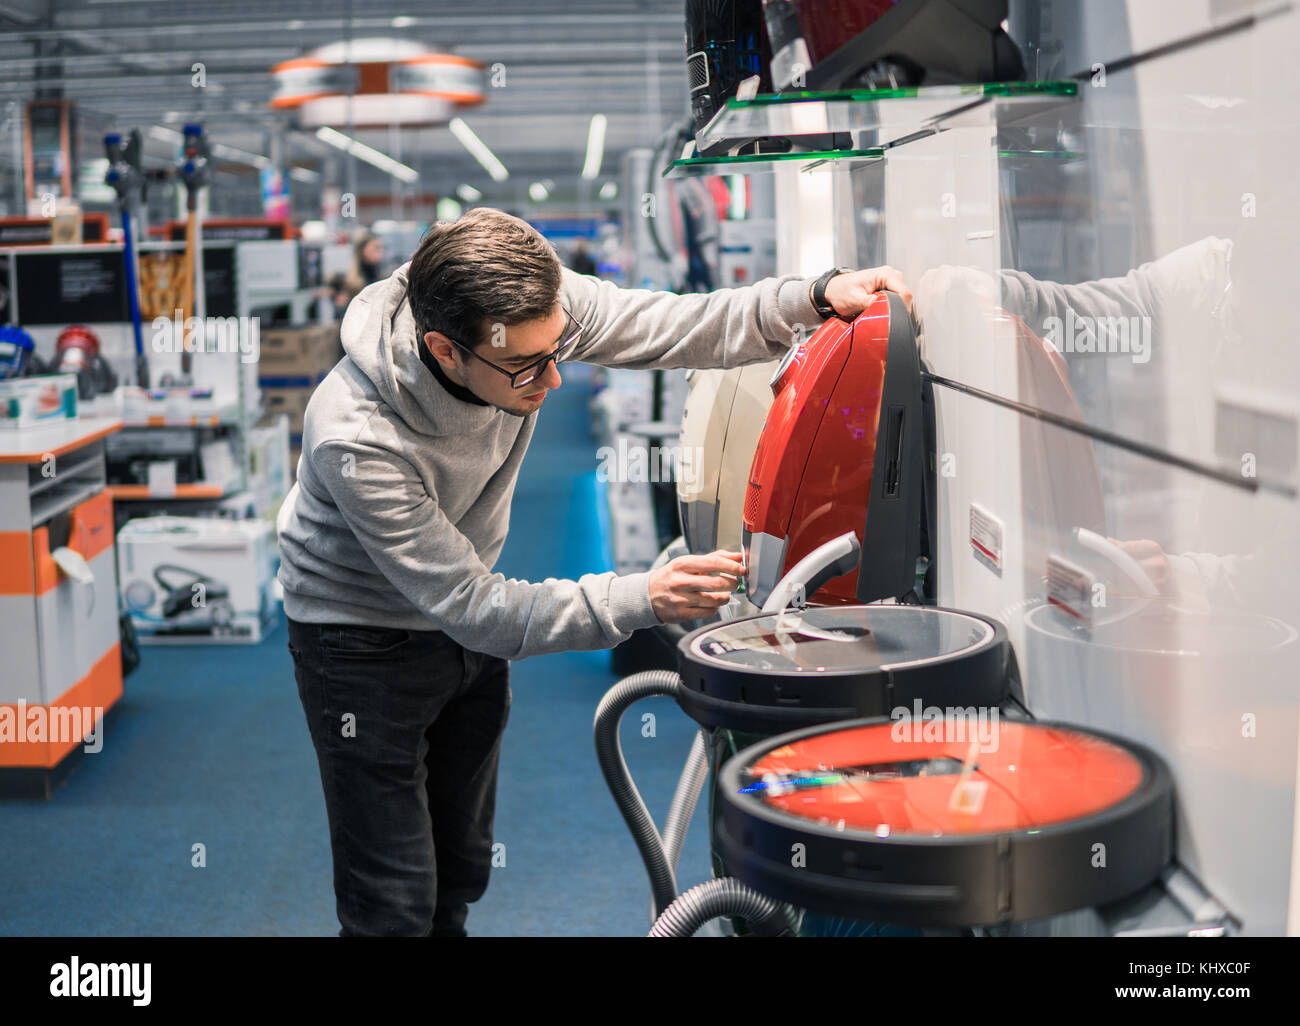 Smart customer buying new vacuum cleaner. Stock Photo